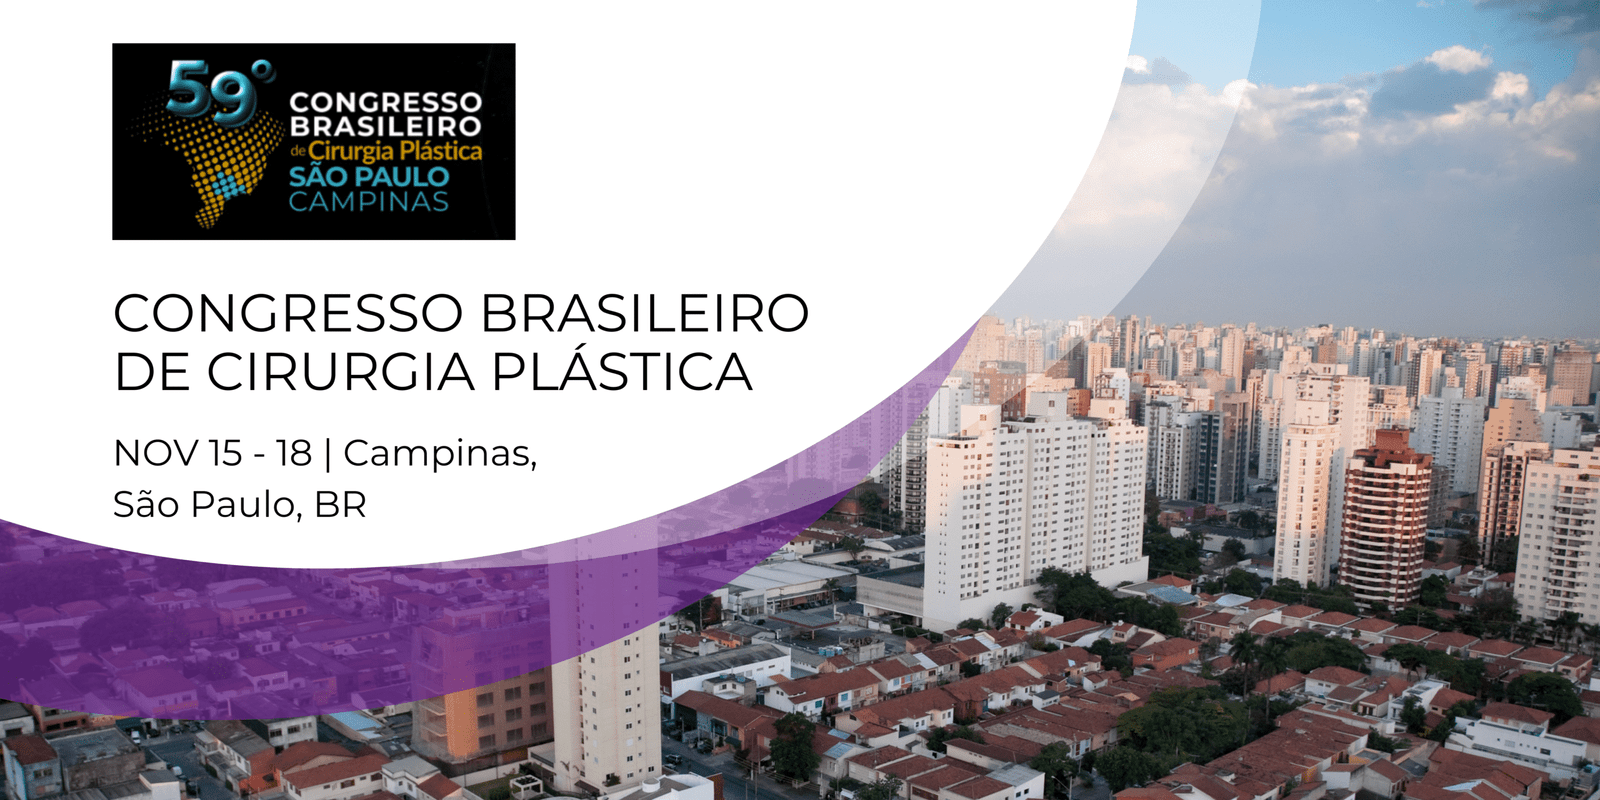 Congresso Brasileiro de Cirurgia Plástica